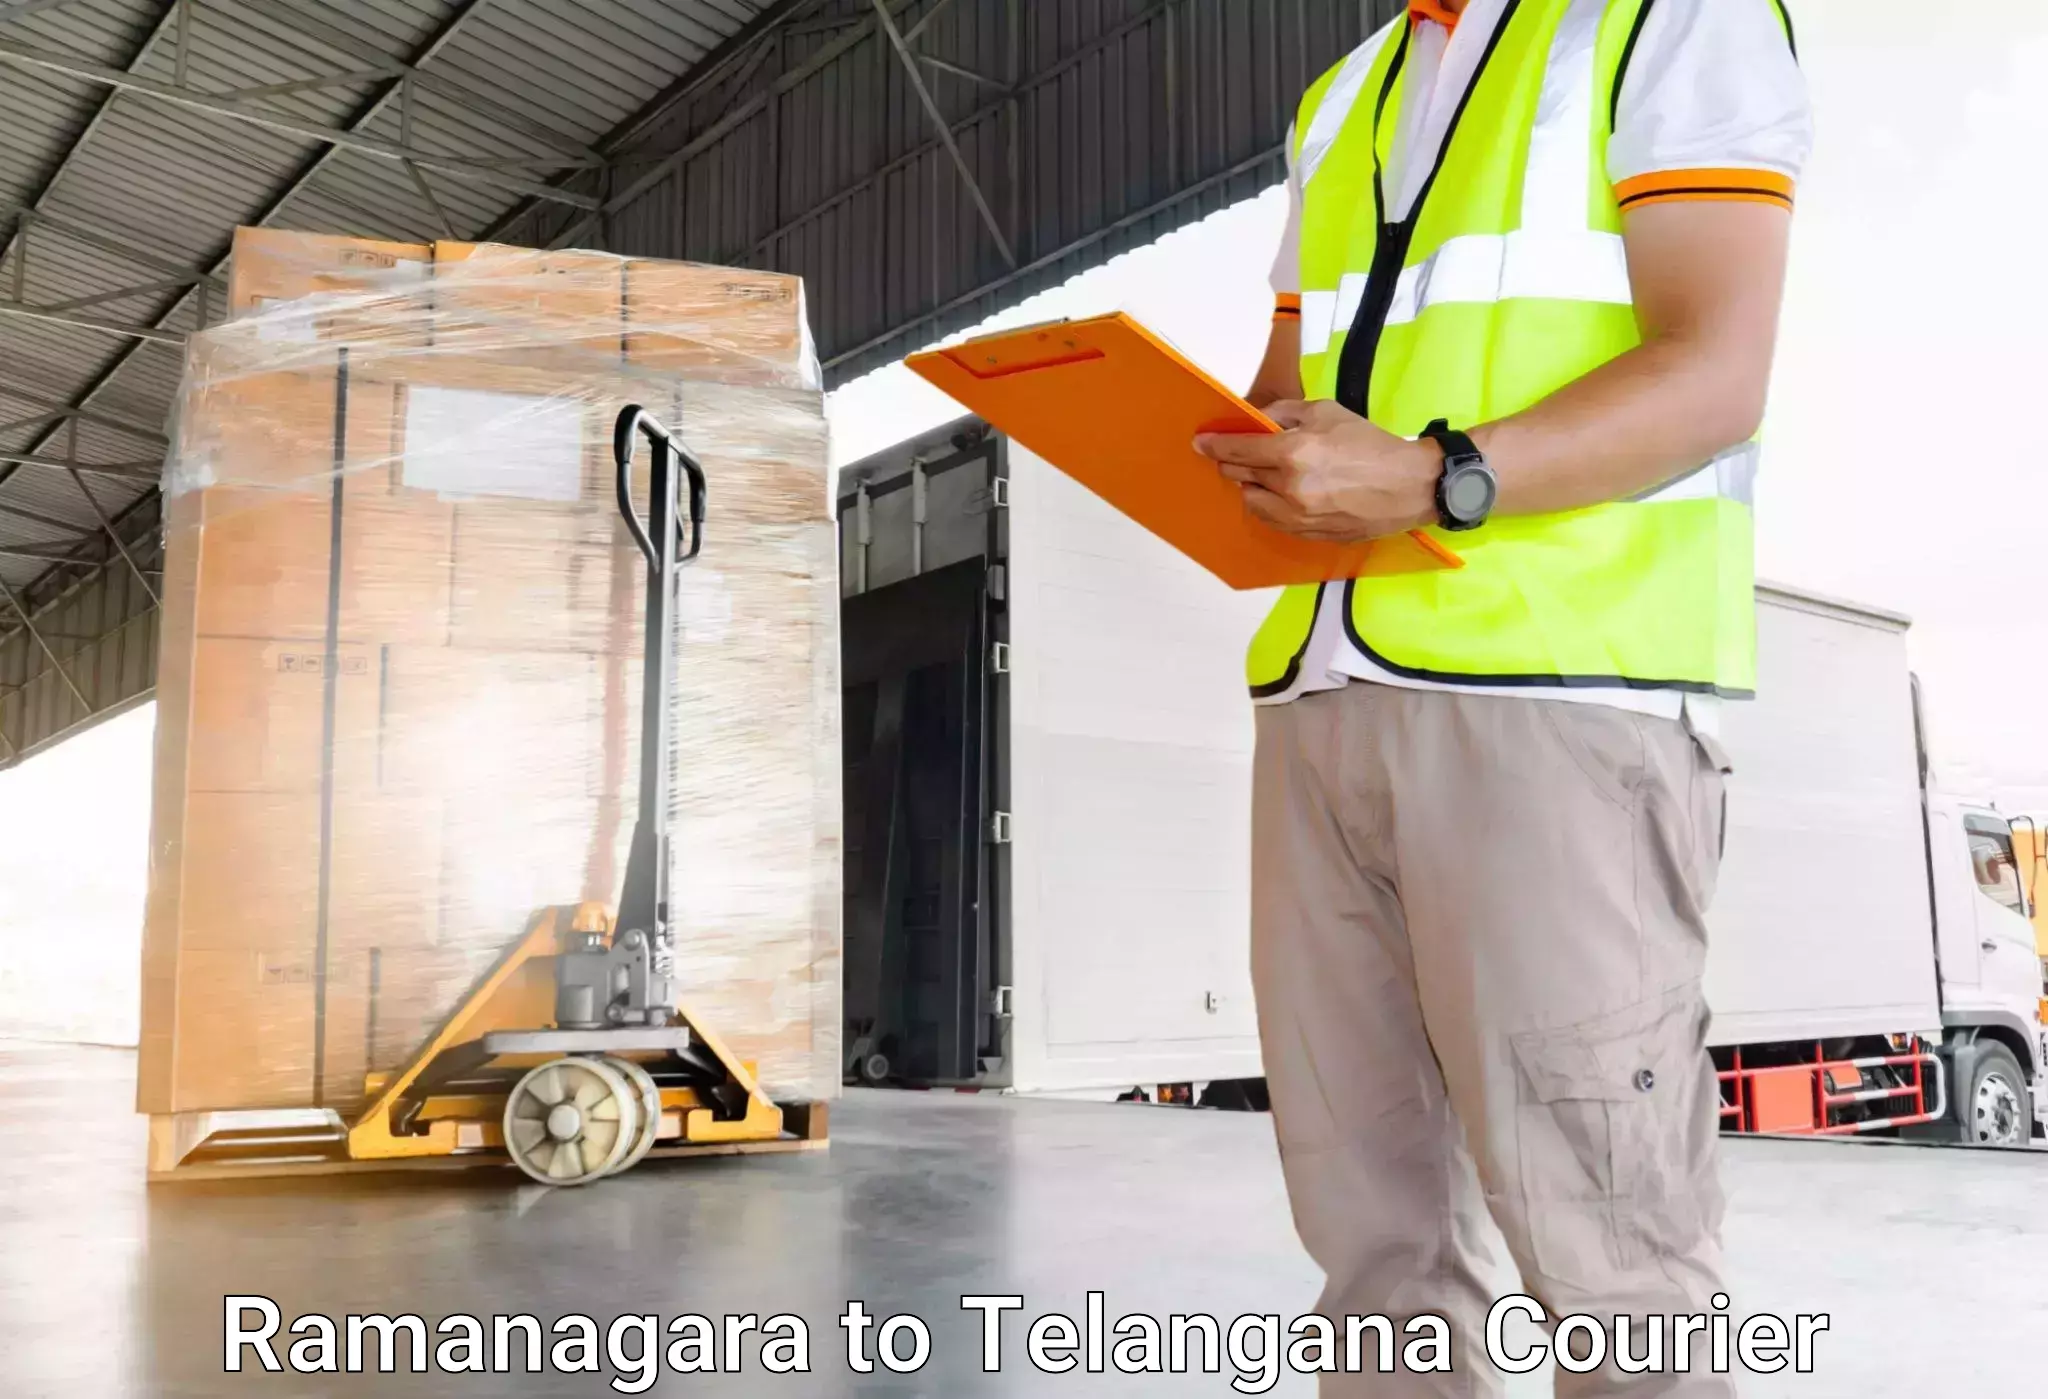 Digital baggage courier Ramanagara to Mogulla Pally